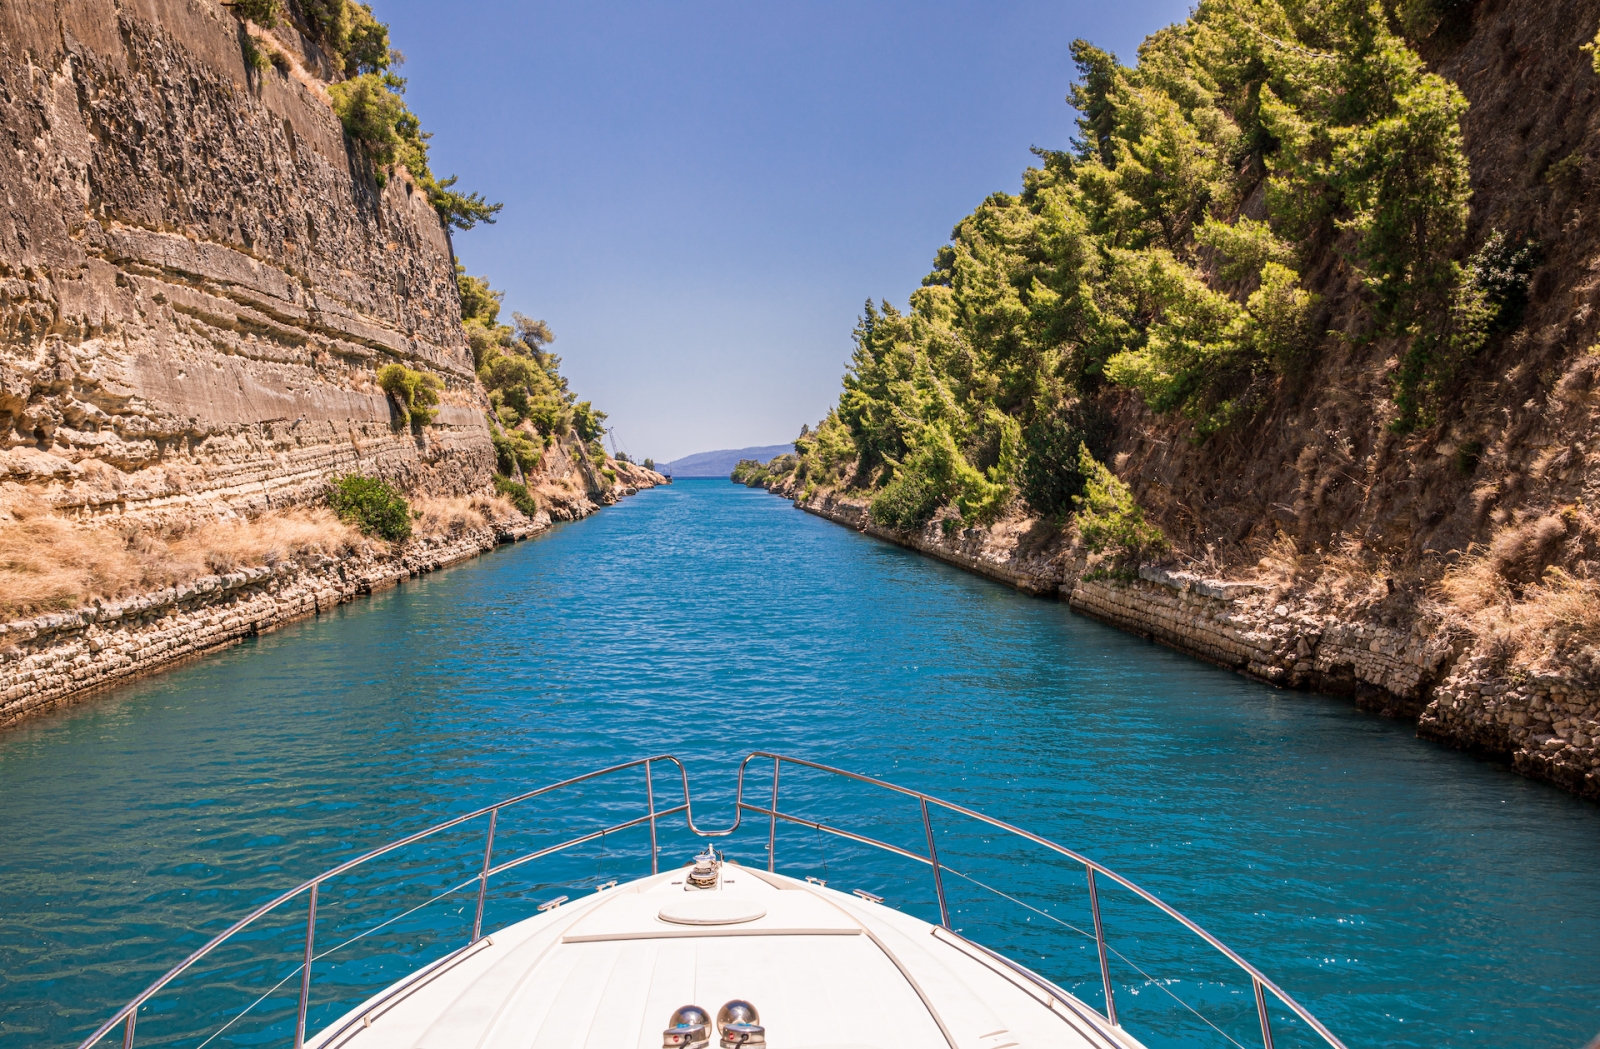 En passant par le canal de Corinthe en yacht, Grèce.  Le canal de Corinthe relie le golfe de Corinthe au golfe Saronique dans la mer Égée.